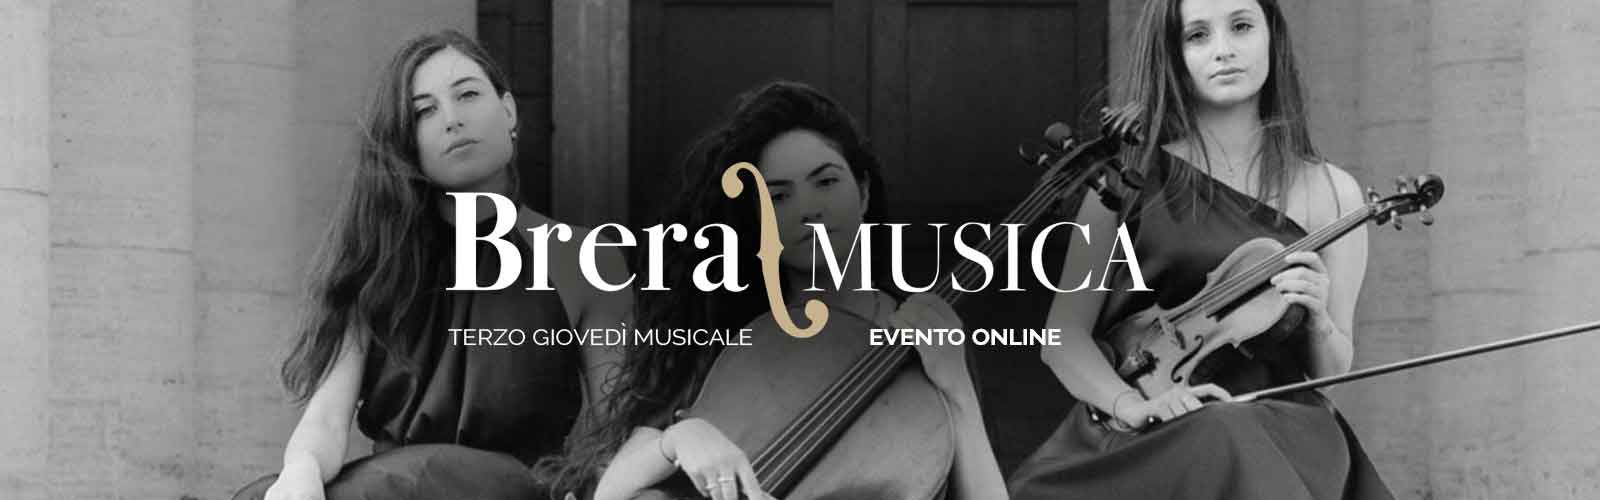 Third Thursday evening of December Brera/Music Online